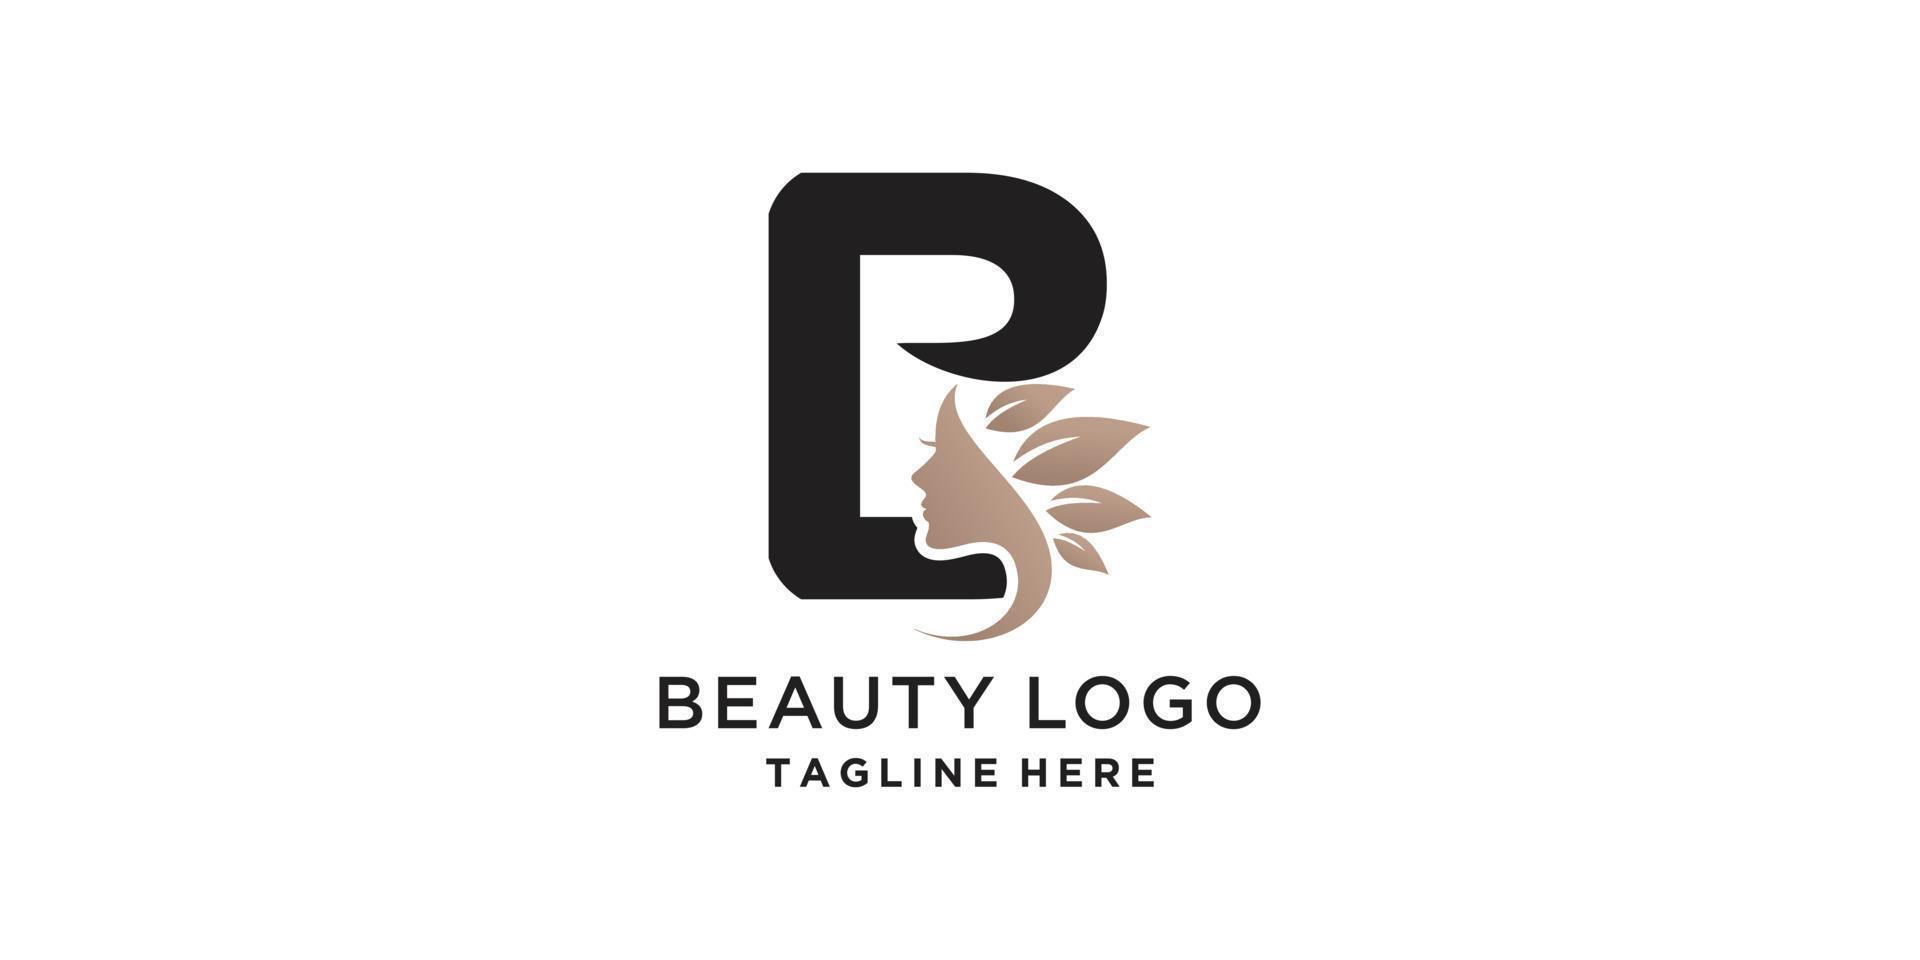 b-logo met modern schoonheidsconcept vector